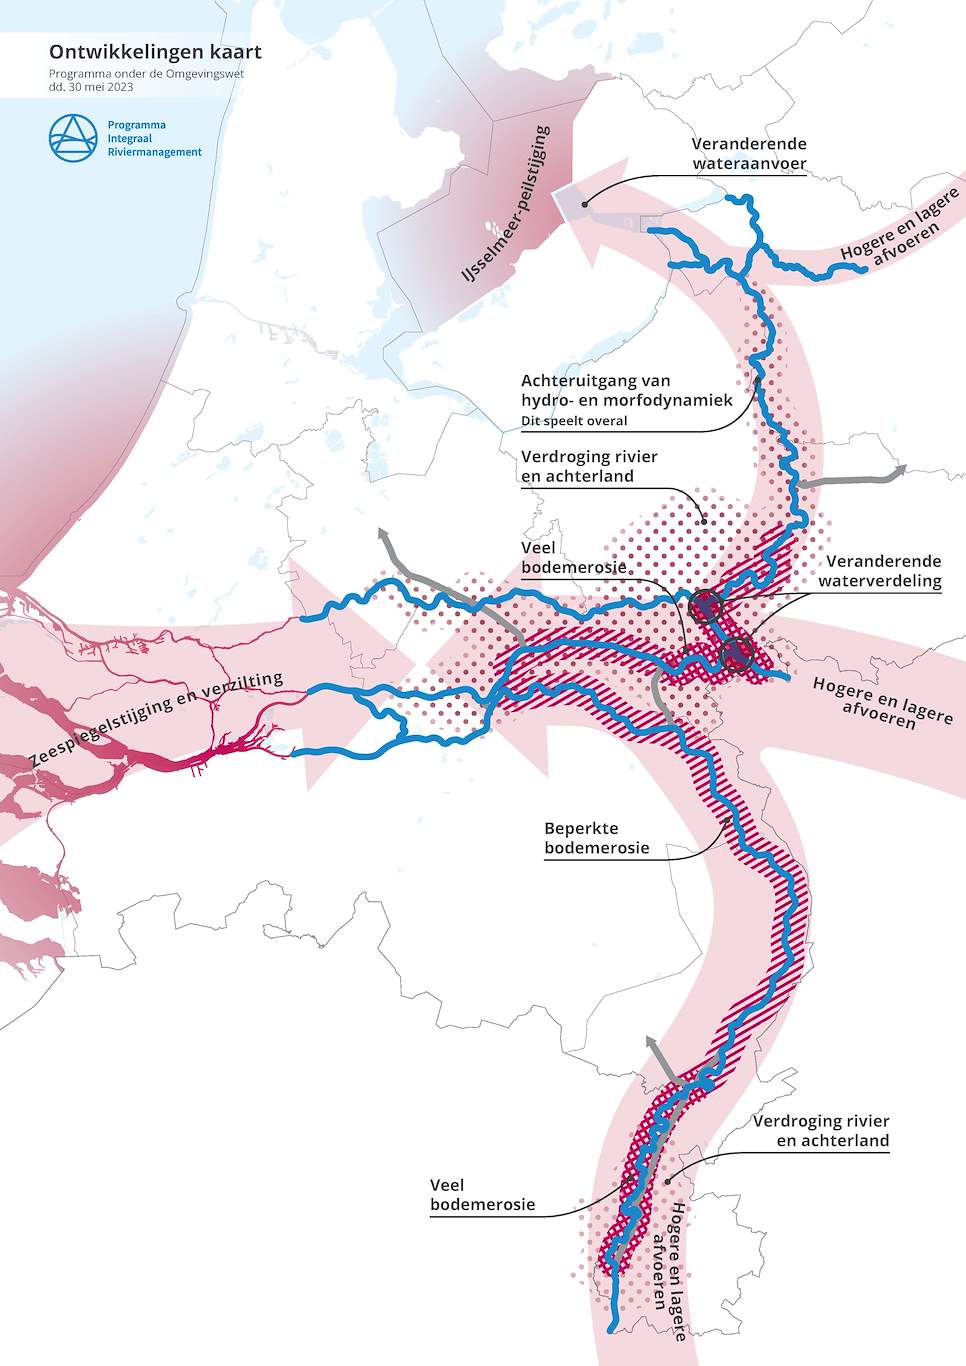 Deze afbeelding laat zien welke ontwikkelingen van invloed zijn op het project. Vanuit de Noordzee is er een ontwikkeling waarbij de zeespiegel stijgt en verzilting toeneemt. Vanuit de Maas, de Waal en de IJssel spelen hogere en lagere afvoeren een rol.